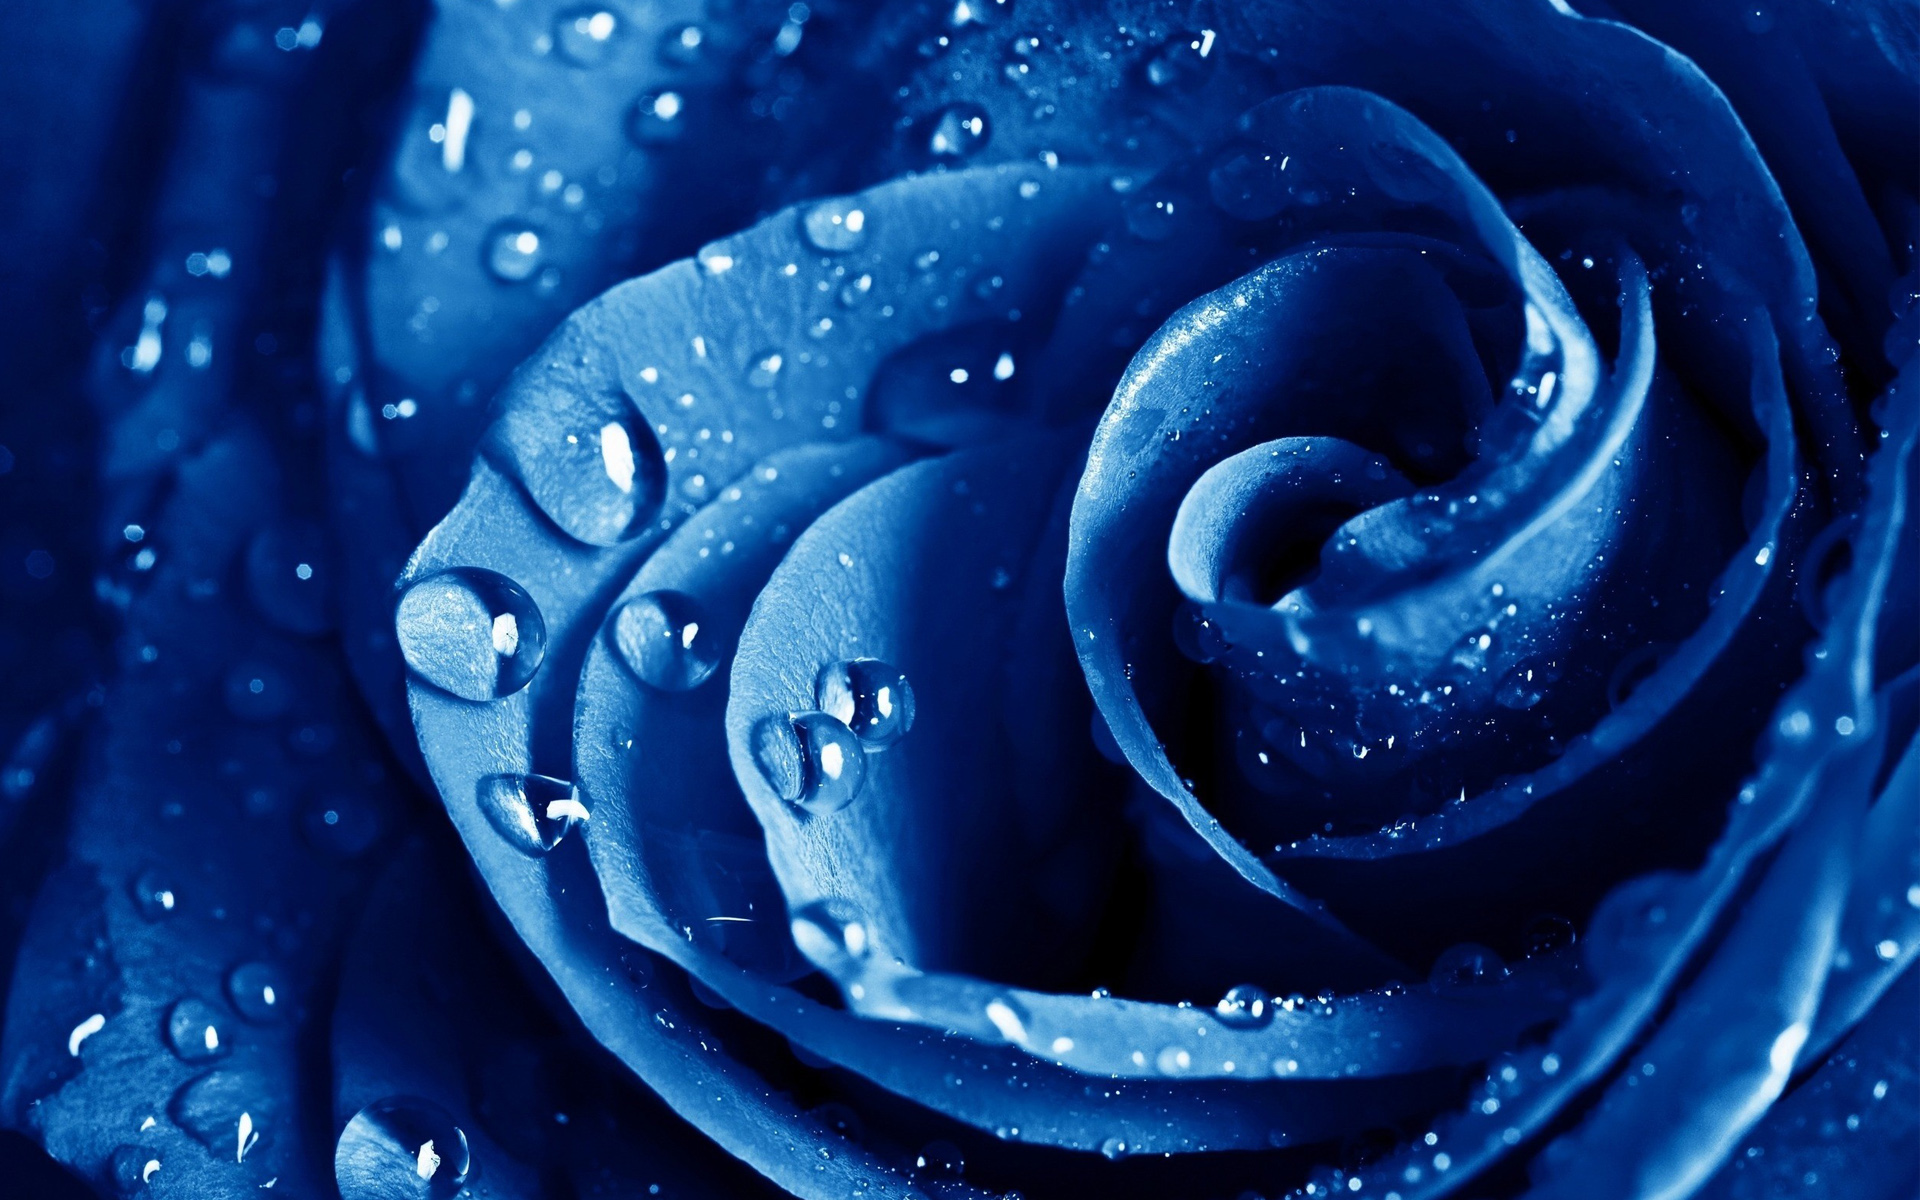 Blue Rose Wallpaper HD | PixelsTalk.Net